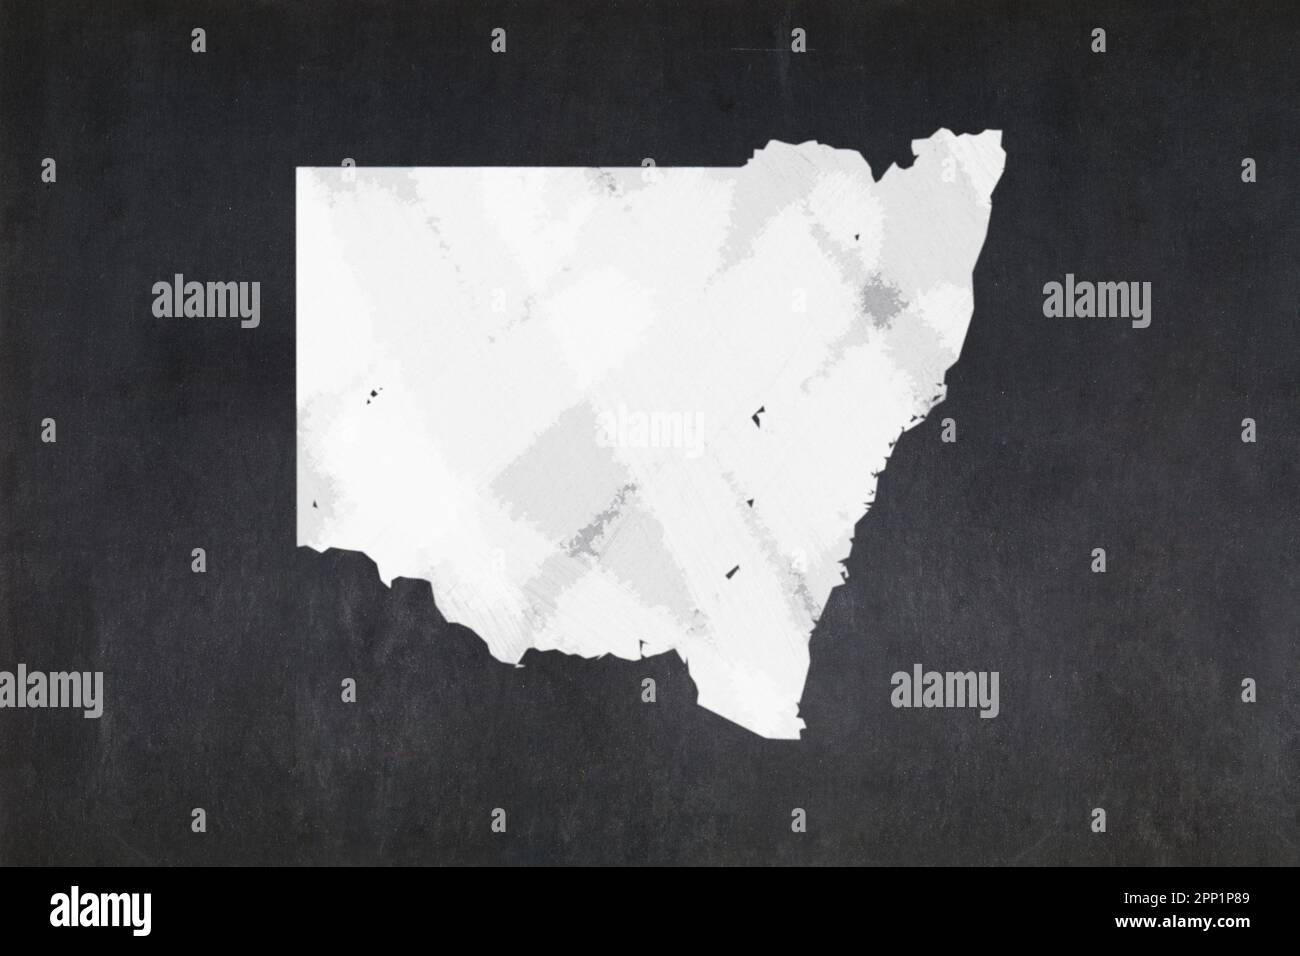 Tableau noir avec une carte de l'État de Nouvelle-Galles du Sud (Australie) dessinée au milieu. Banque D'Images